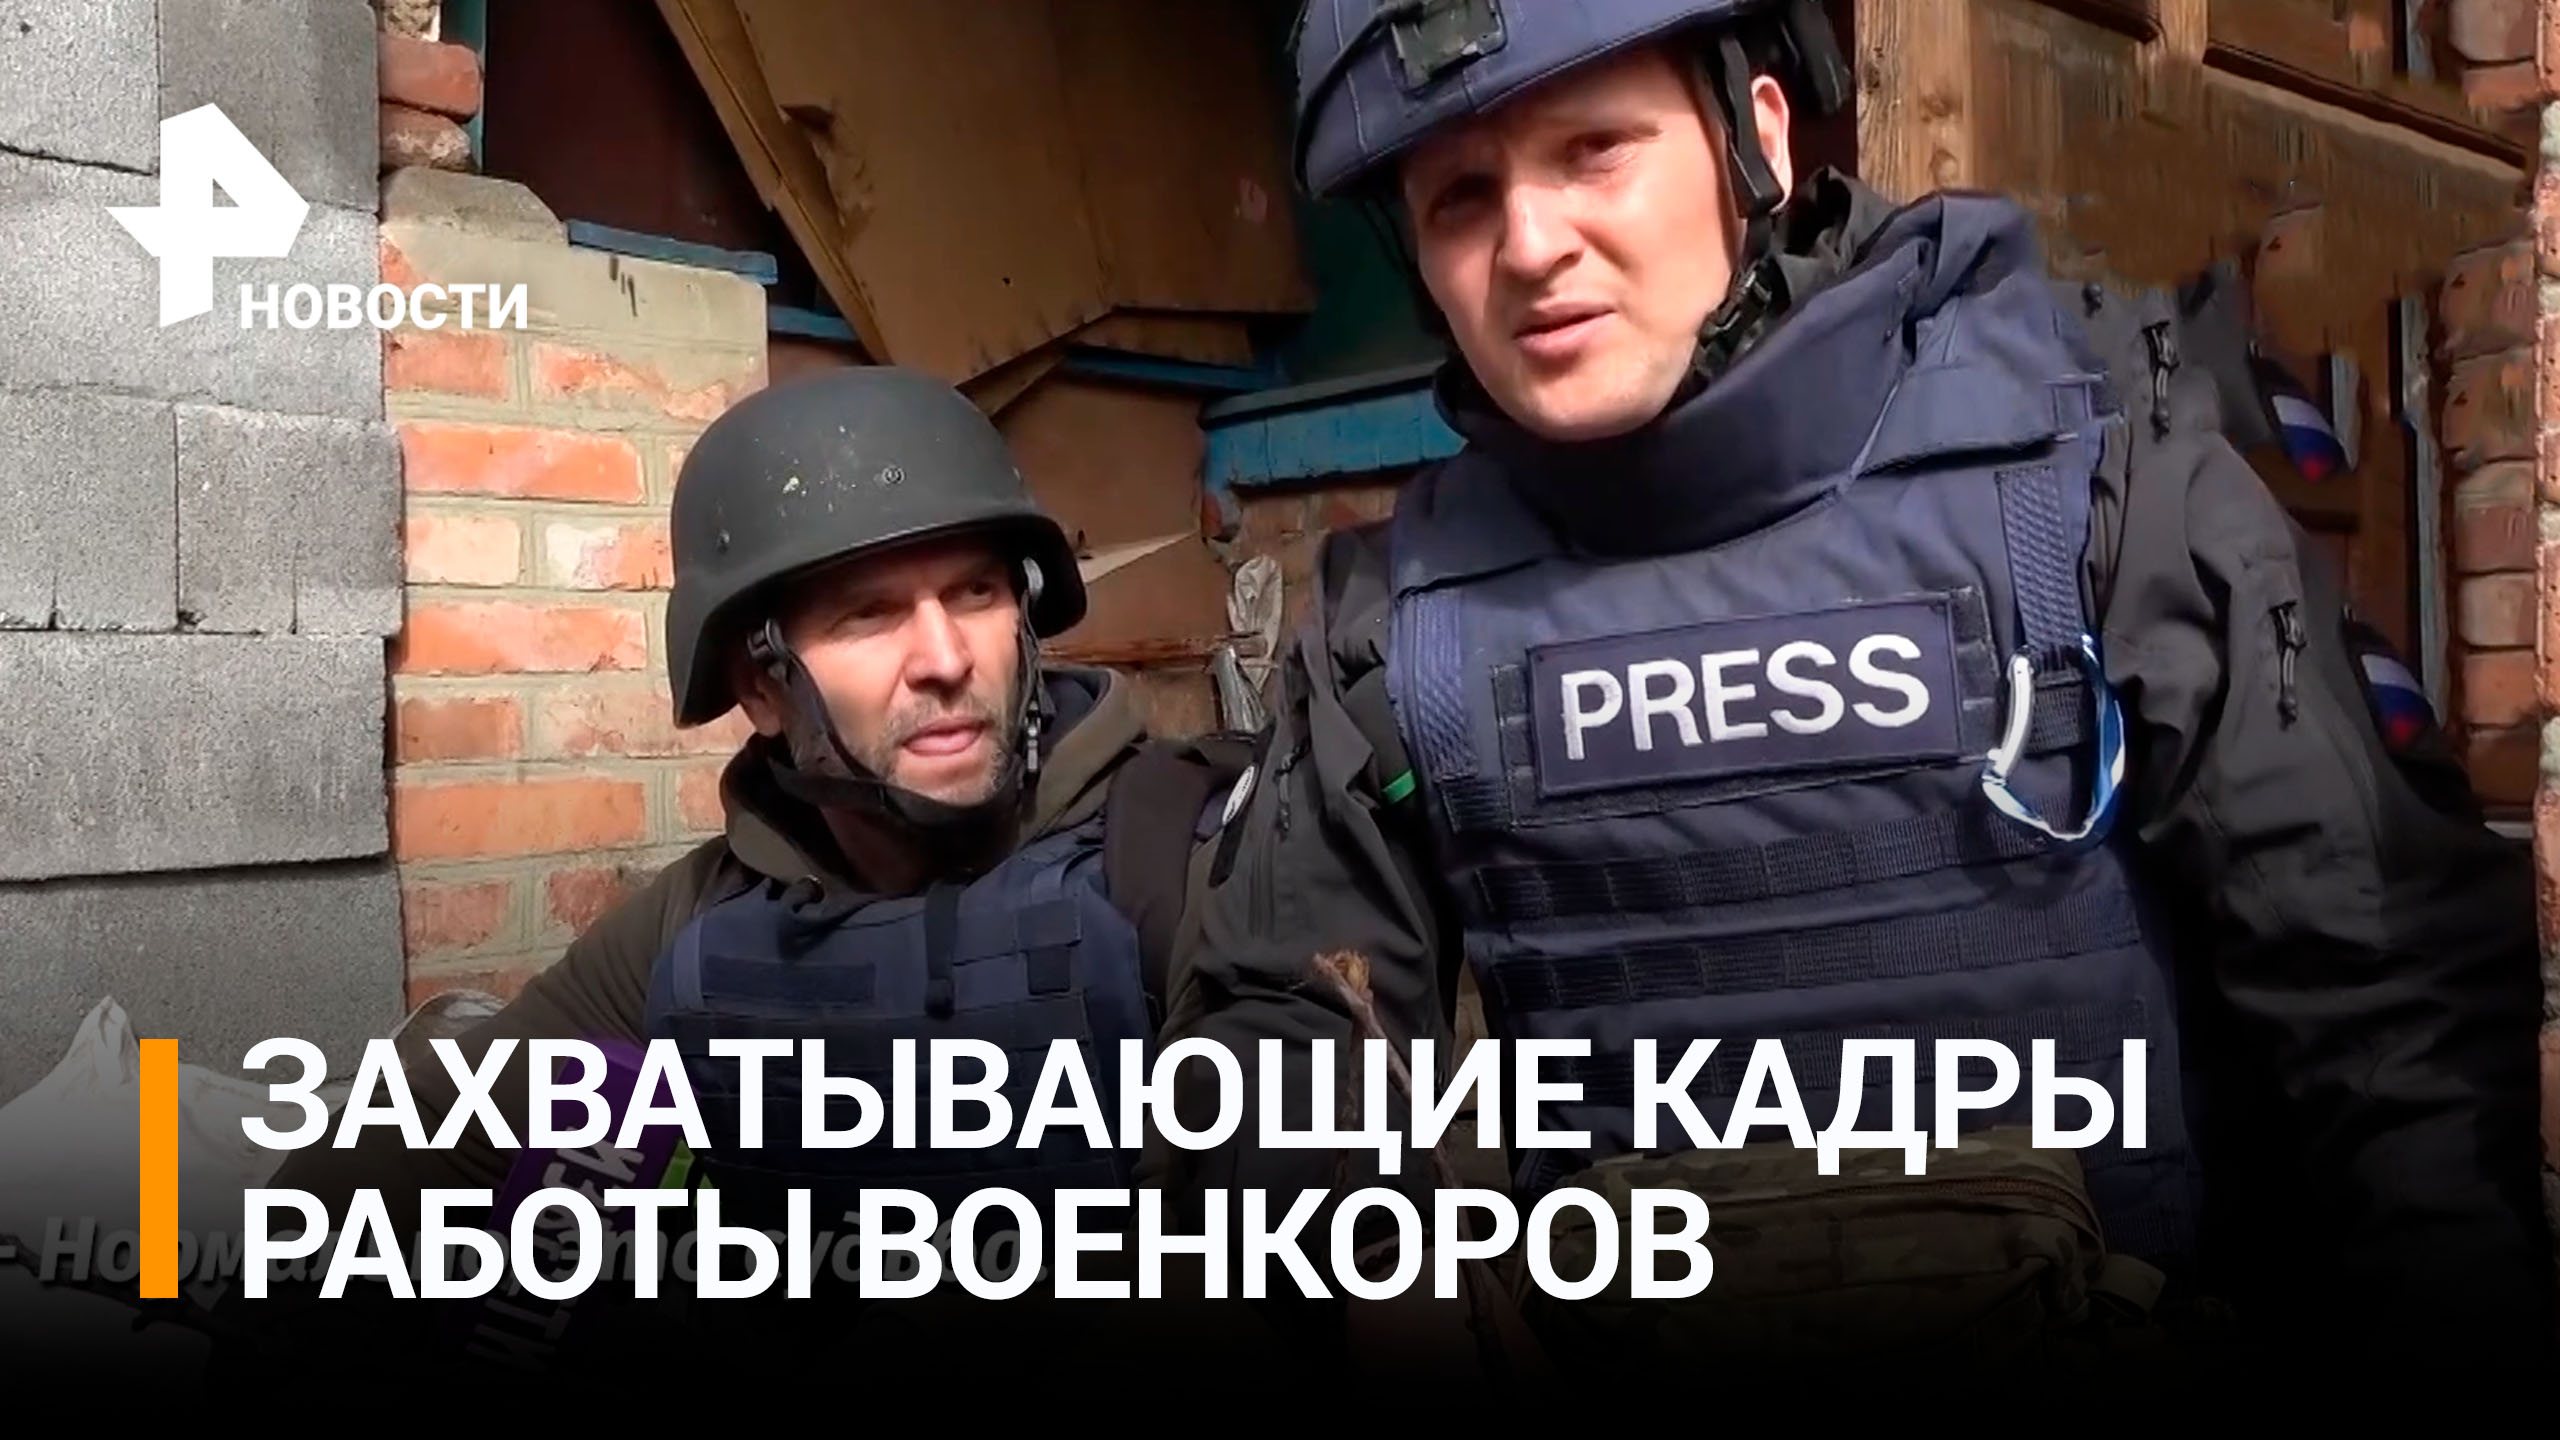 Убегая от обстрелов боевиков с микрофоном: невероятные кадры работы российских военкоров